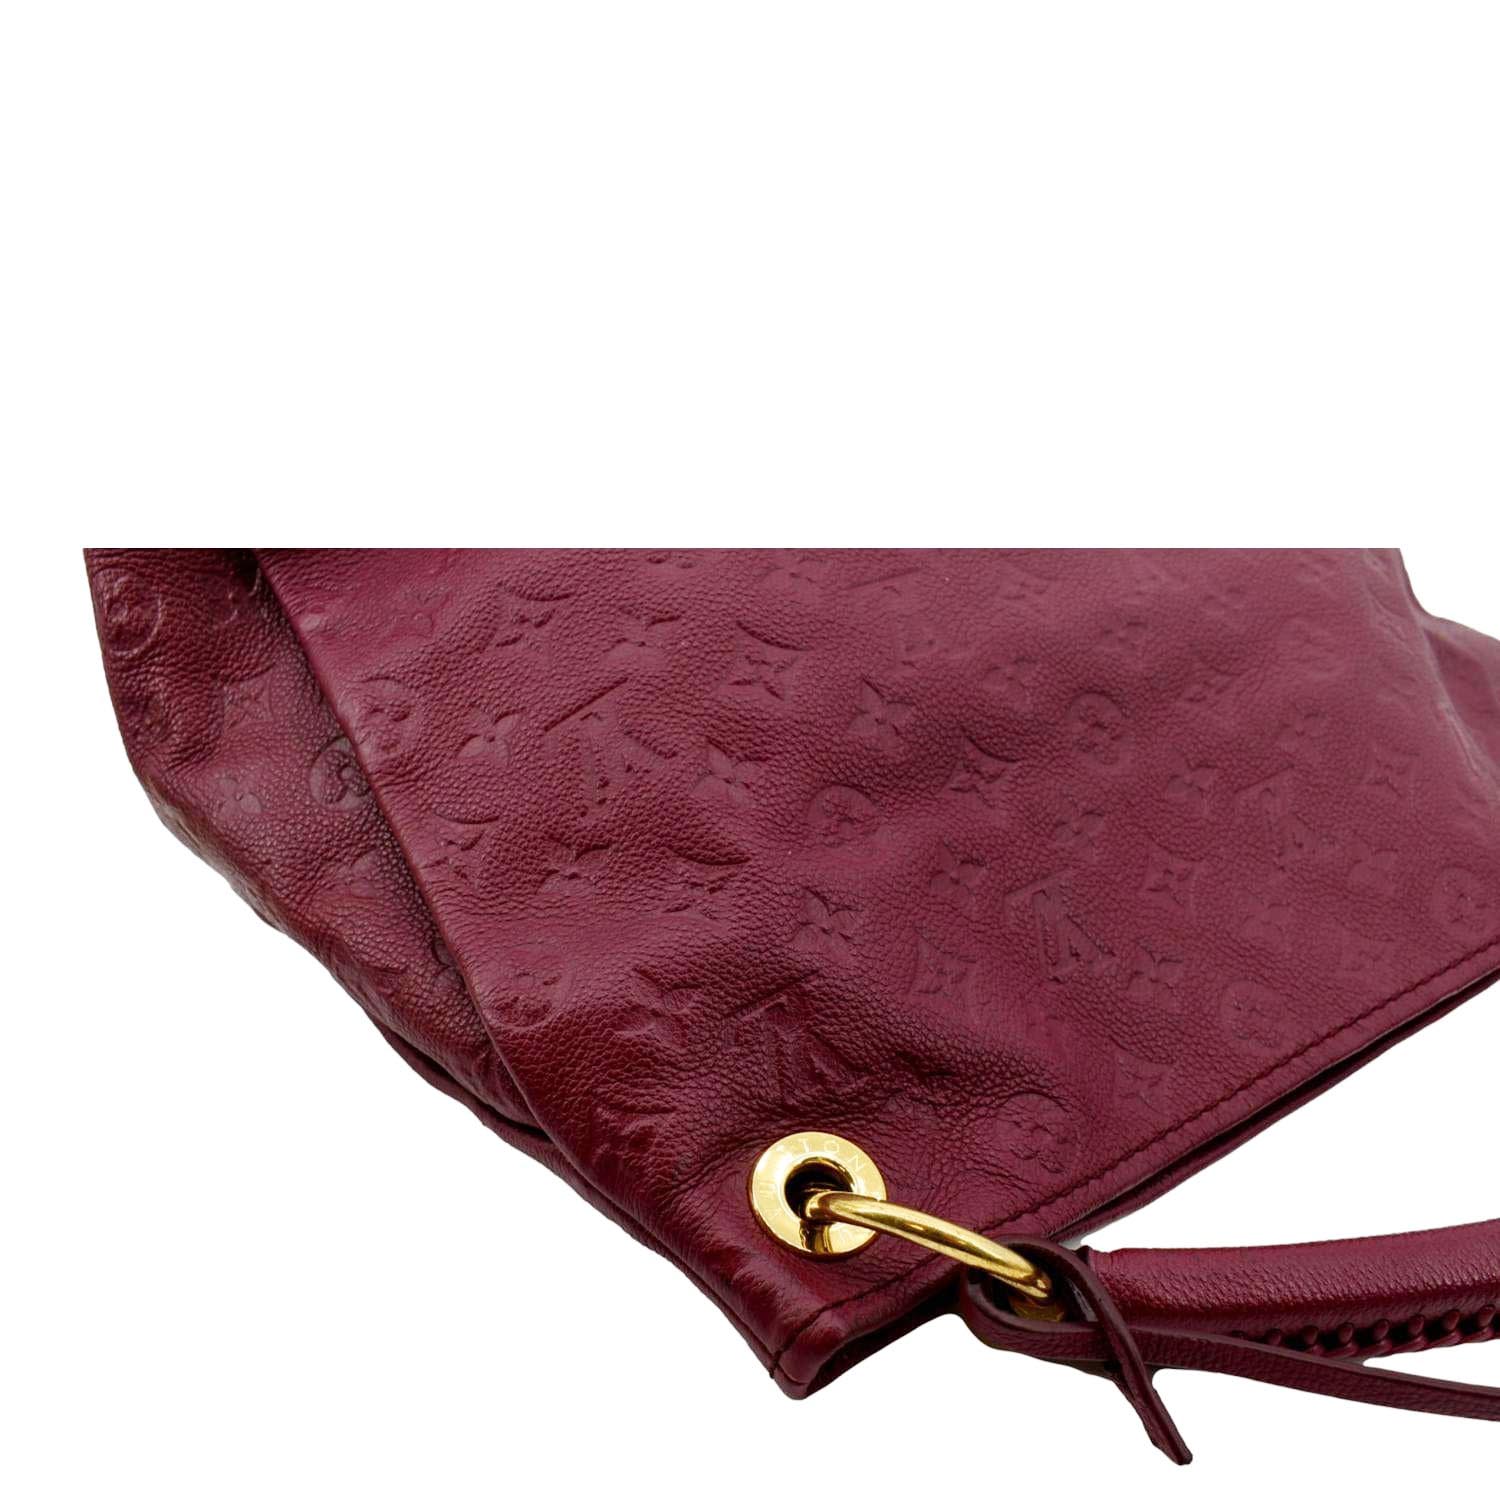 Brown Louis Vuitton Monogram Empreinte Artsy MM Hobo Bag – Designer Revival